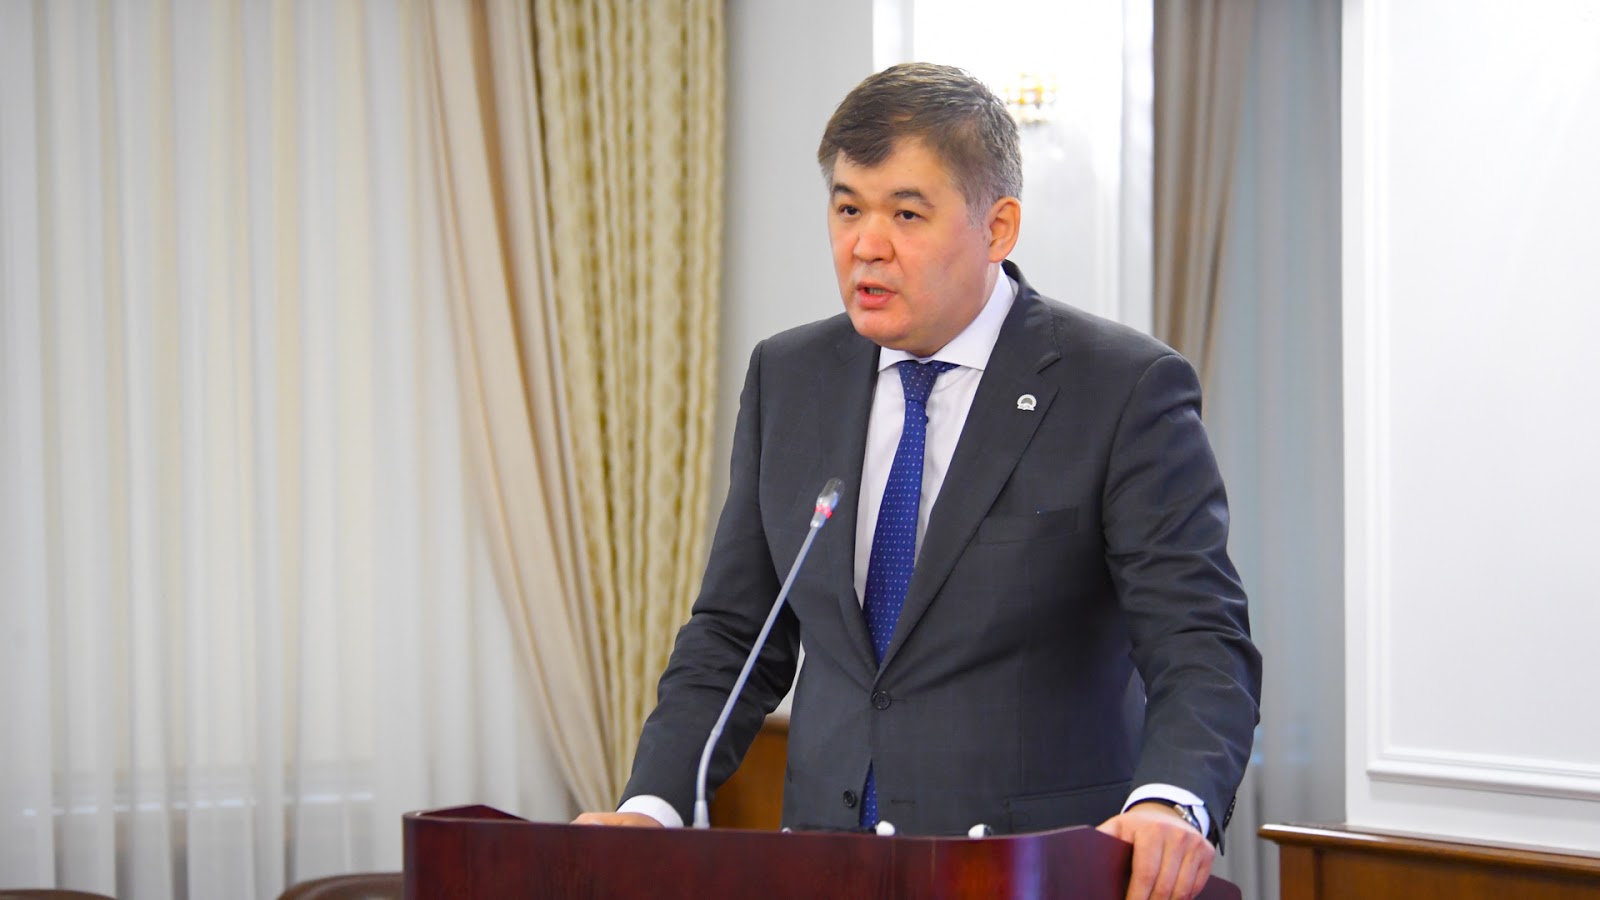 No cases of coronavirus registered in Kazakhstan - Healthcare Ministry